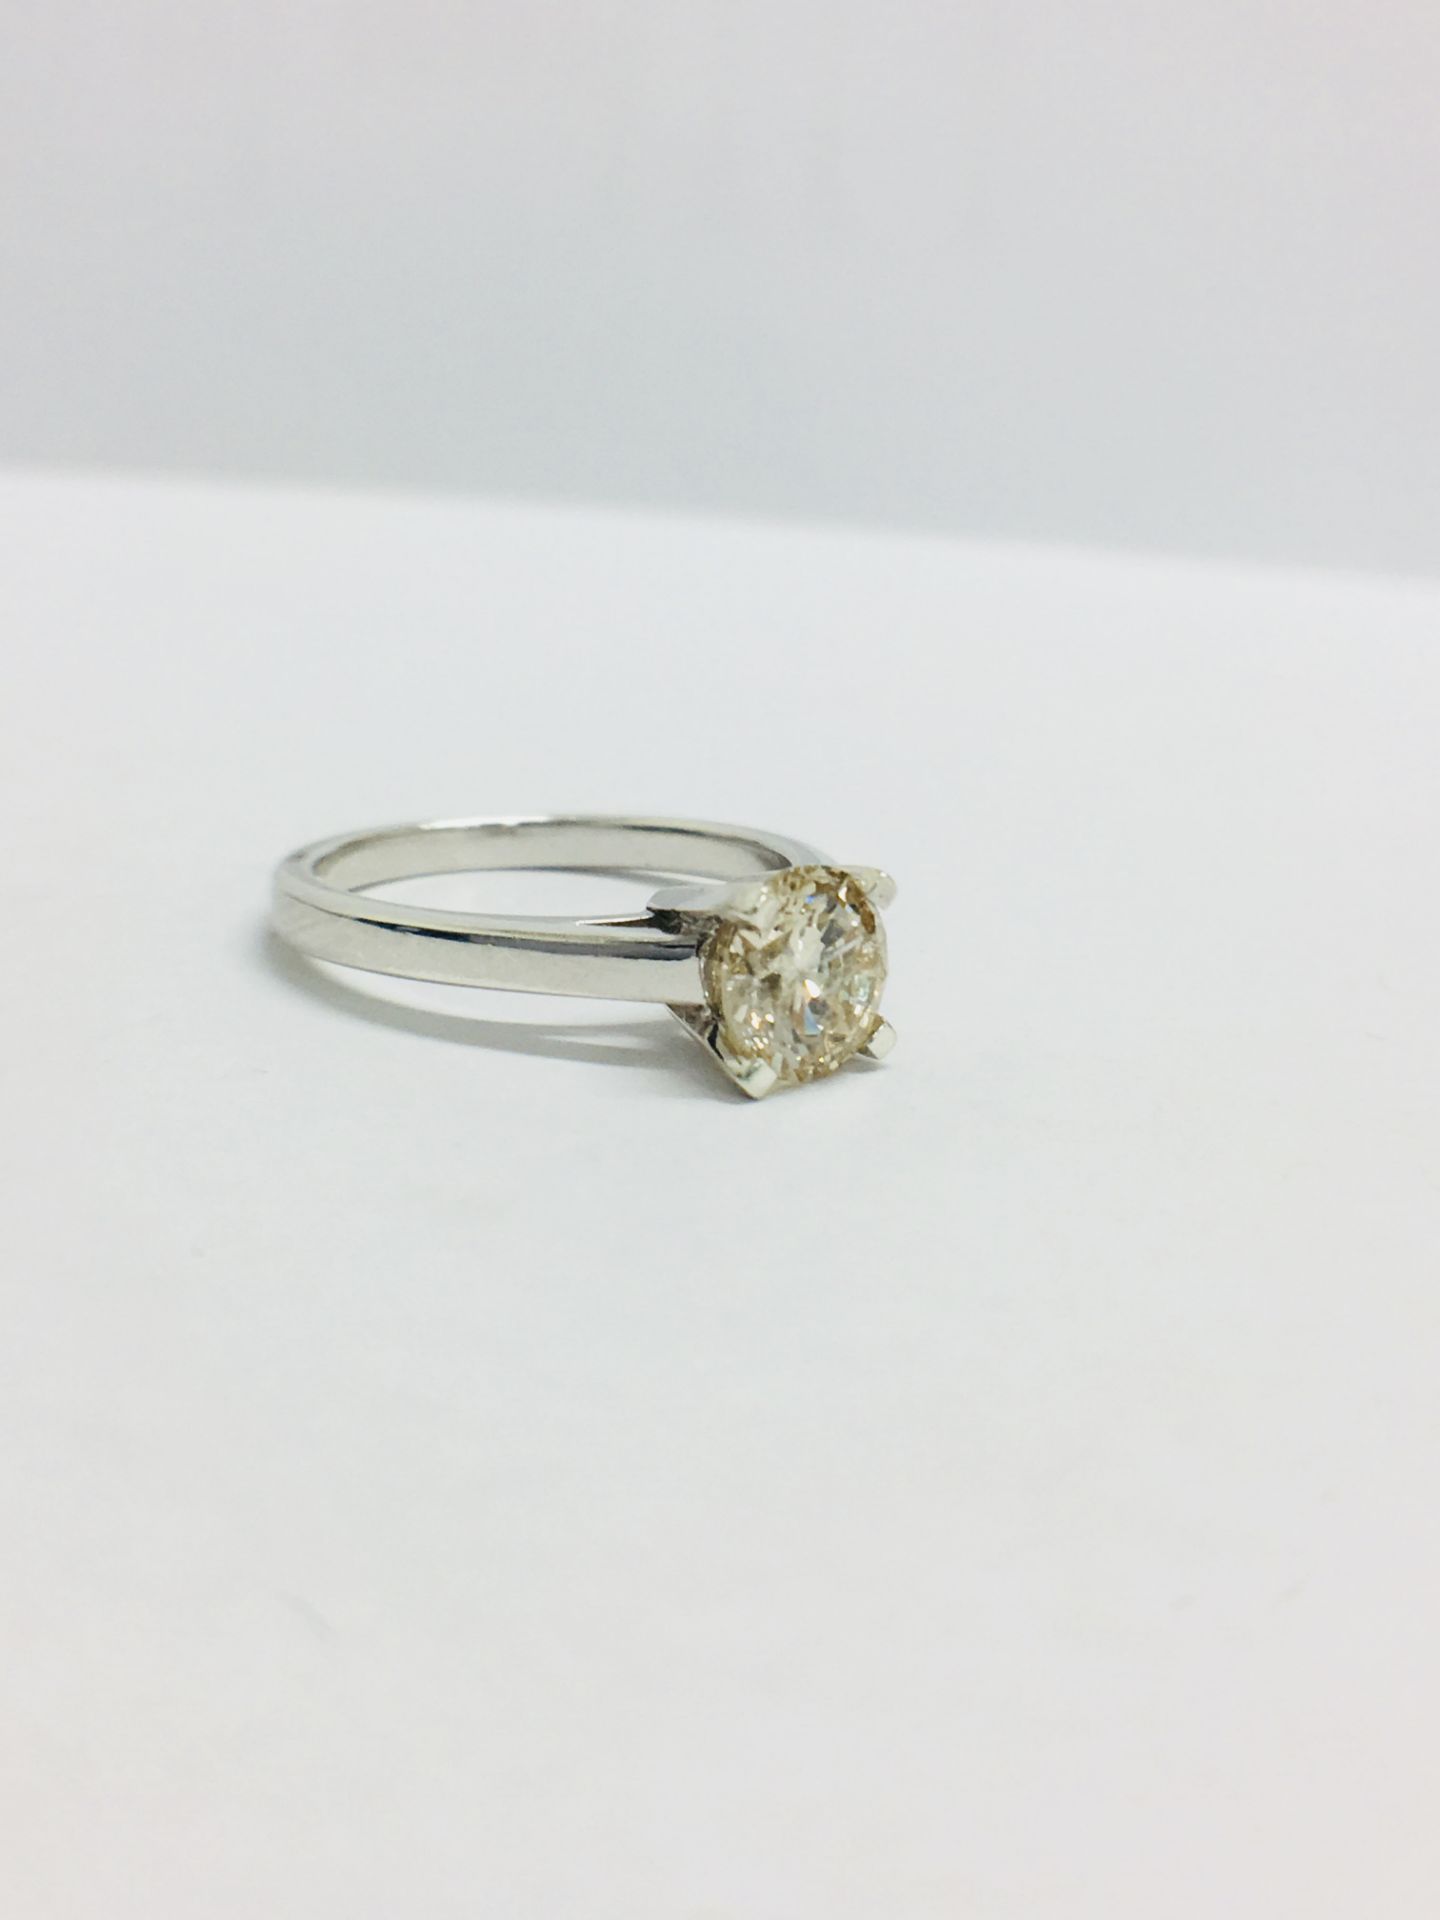 1.00Ct Diamond Solitaire Ring Set In Platinum. - Image 6 of 8